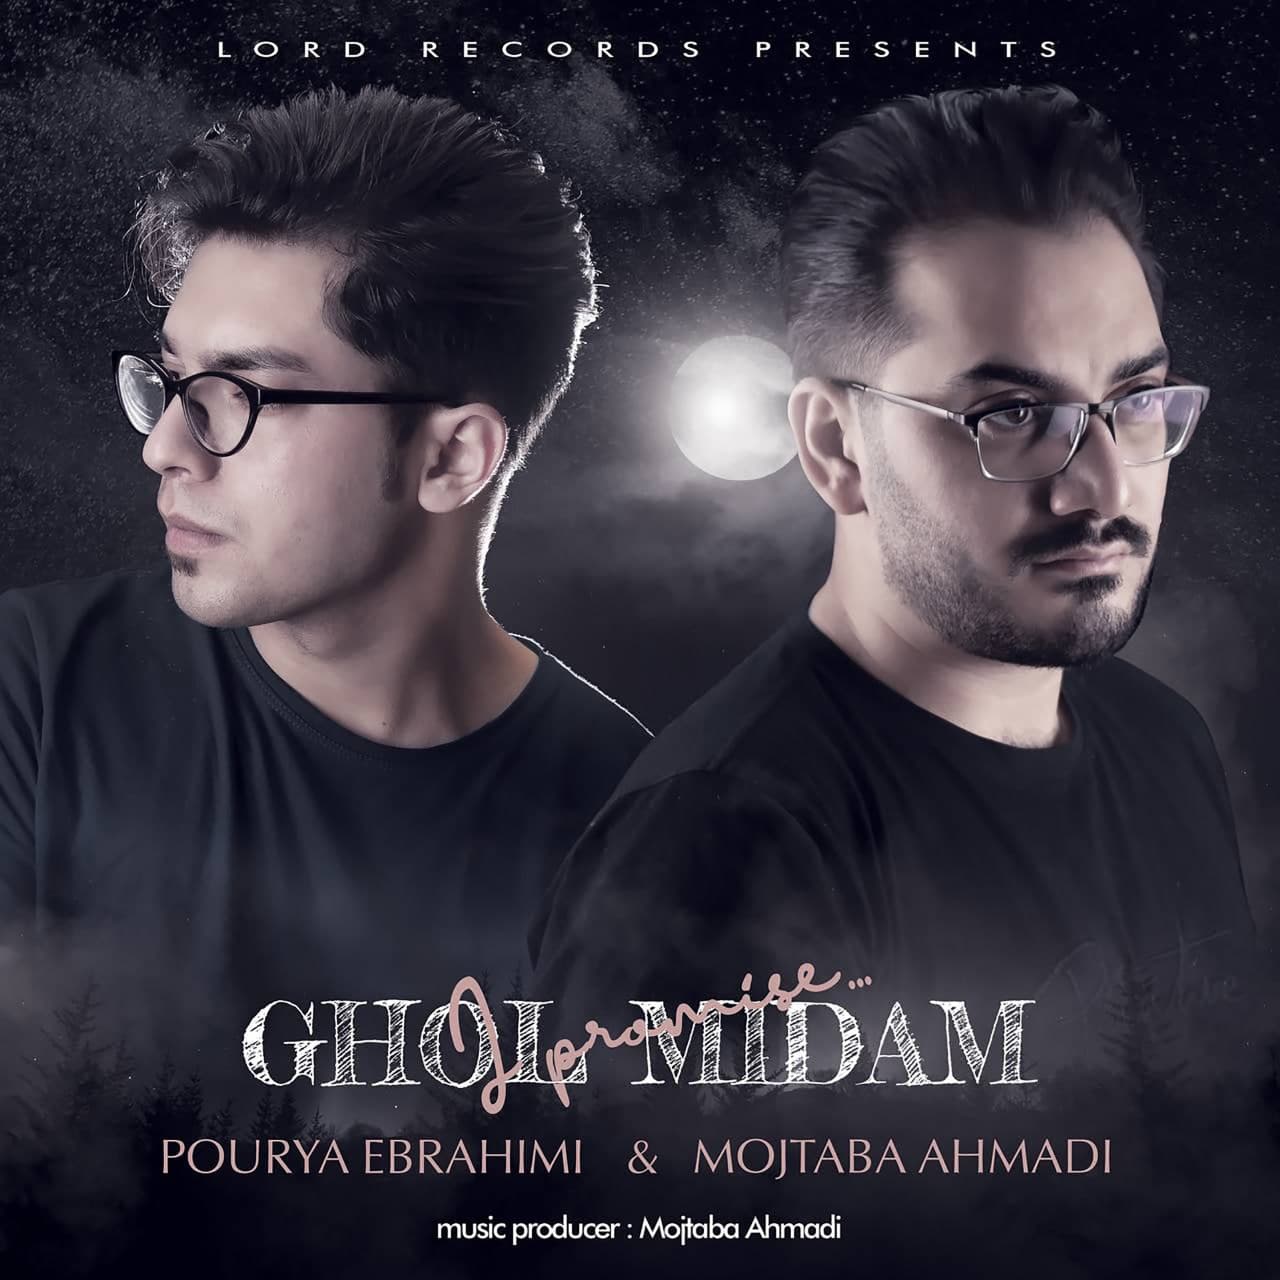  دانلود آهنگ جدید پوریا ابراهیمی - قول میدم | Download New Music By Pourya Ebrahimi - Ghol Midam (feat. Mojtaba Ahmadi)